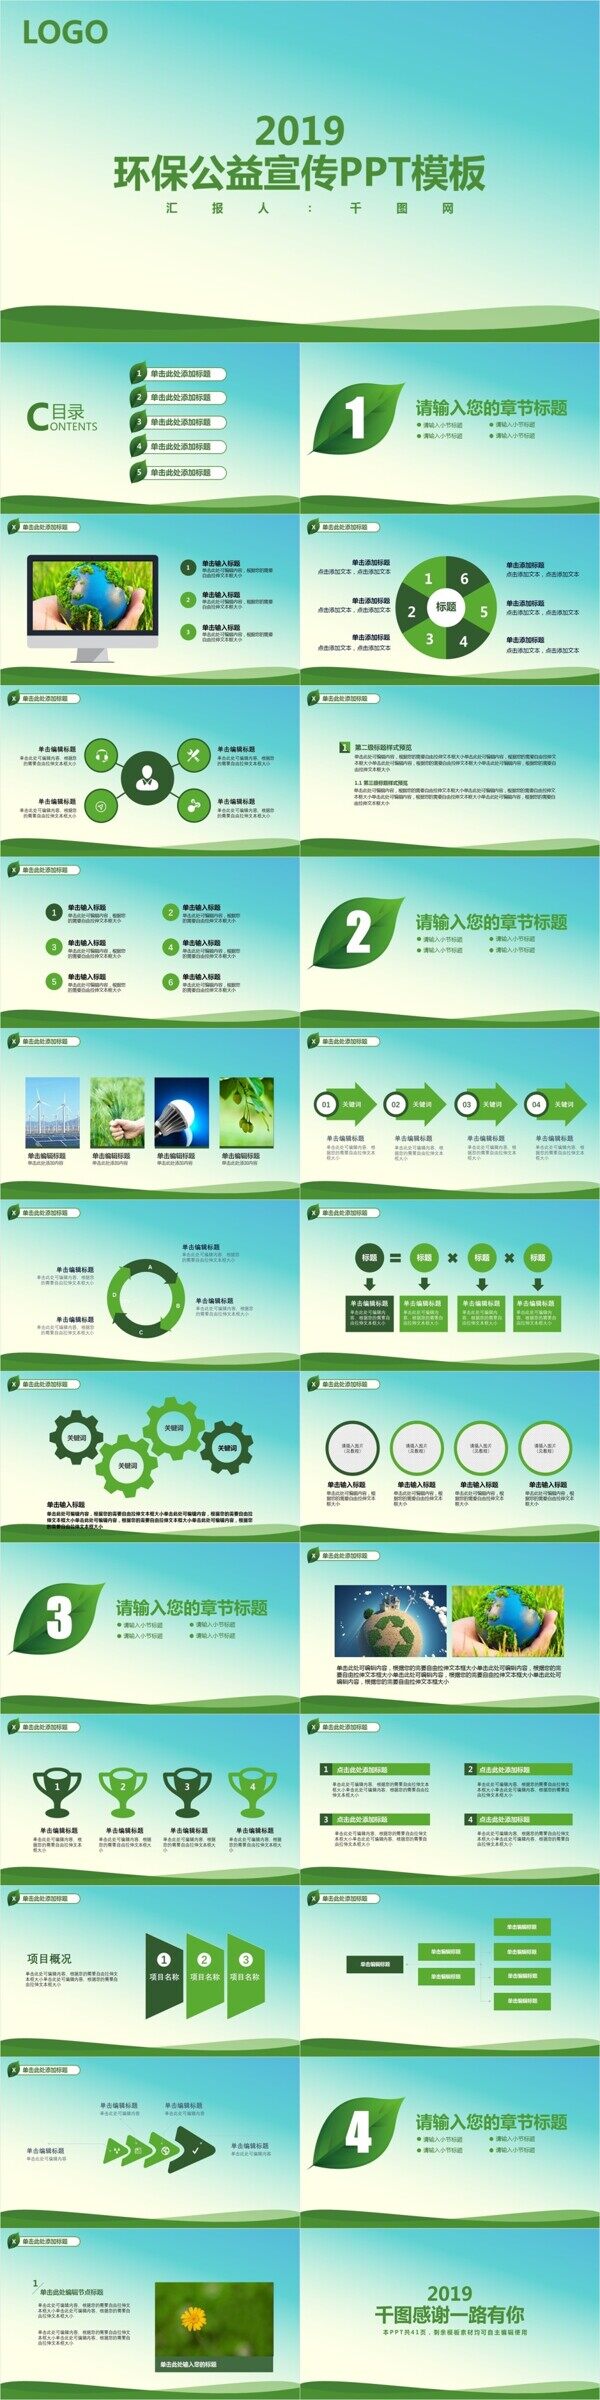 绿色环保公益宣传PPT模板